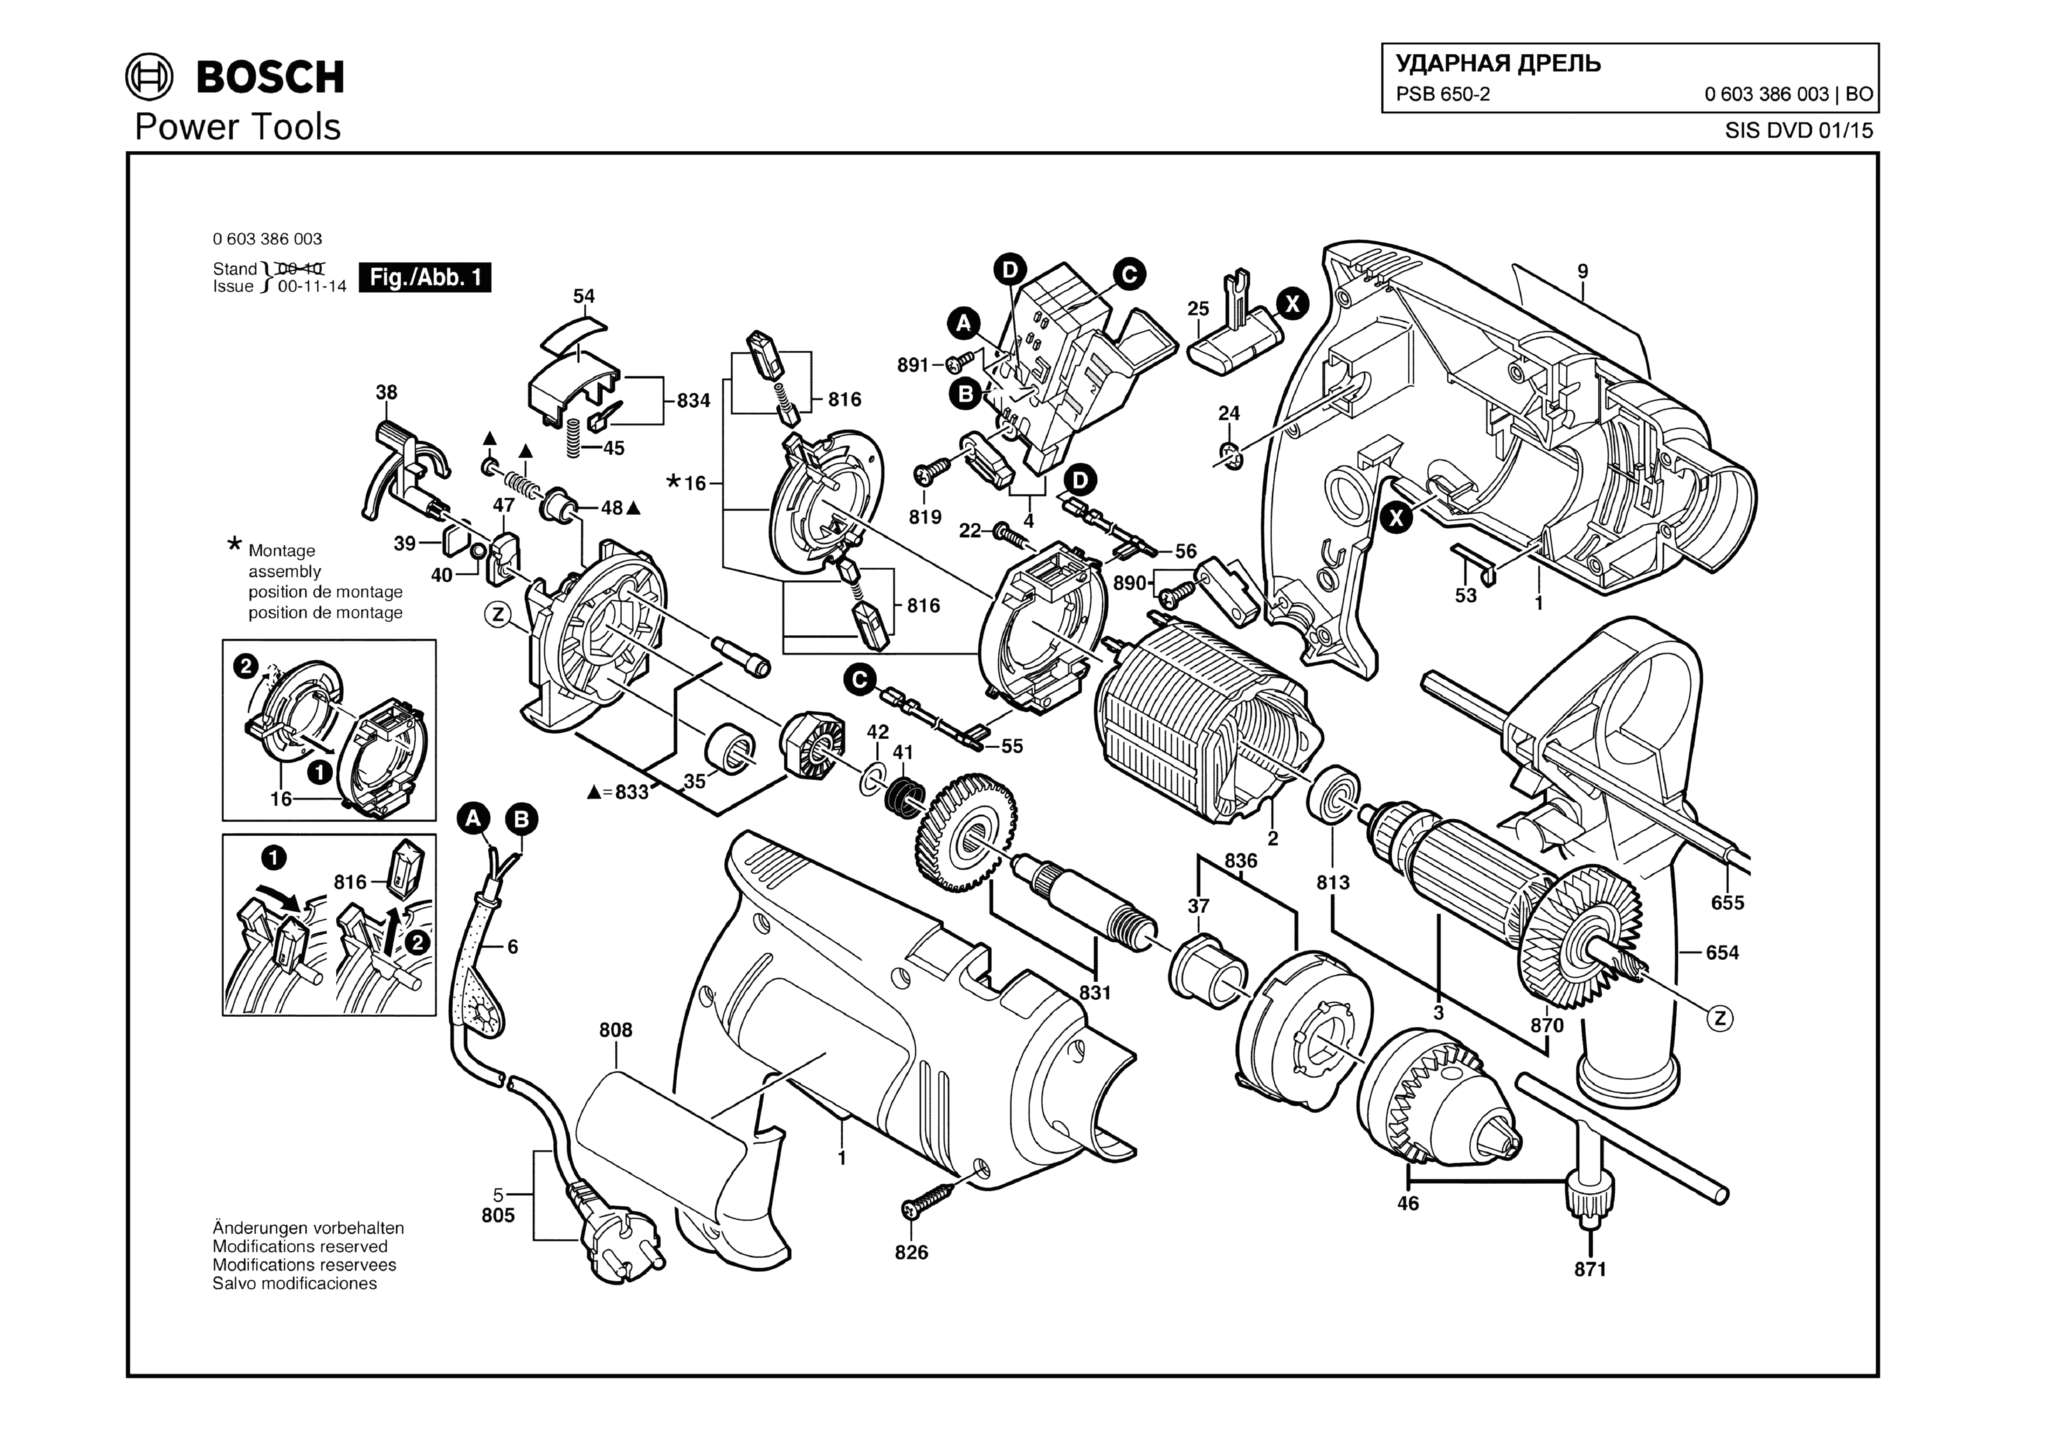 Запчасти, схема и деталировка Bosch PSB 650-2 (ТИП 0603386003)